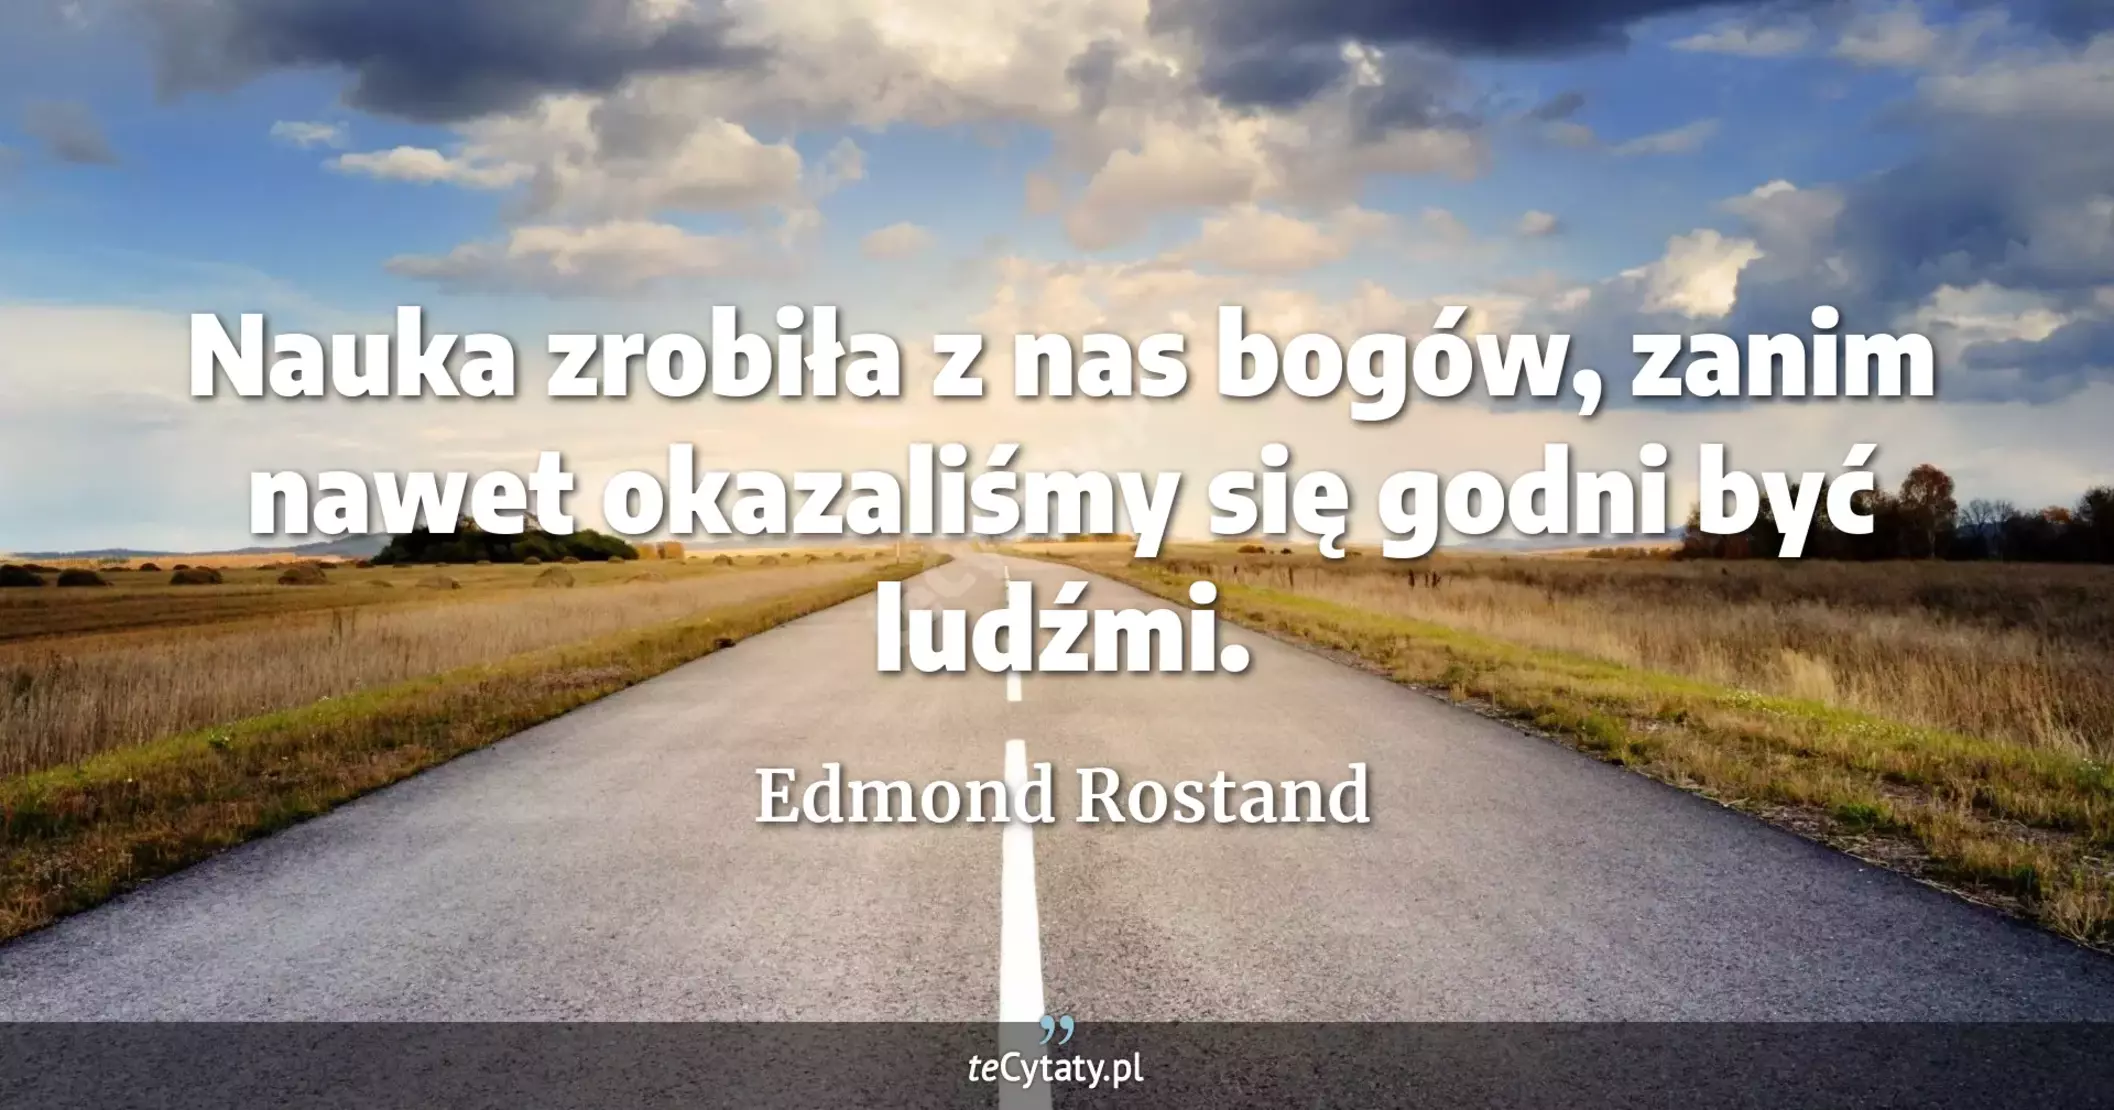 Nauka zrobiła z nas bogów, zanim nawet okazaliśmy się godni być ludźmi. - Edmond Rostand